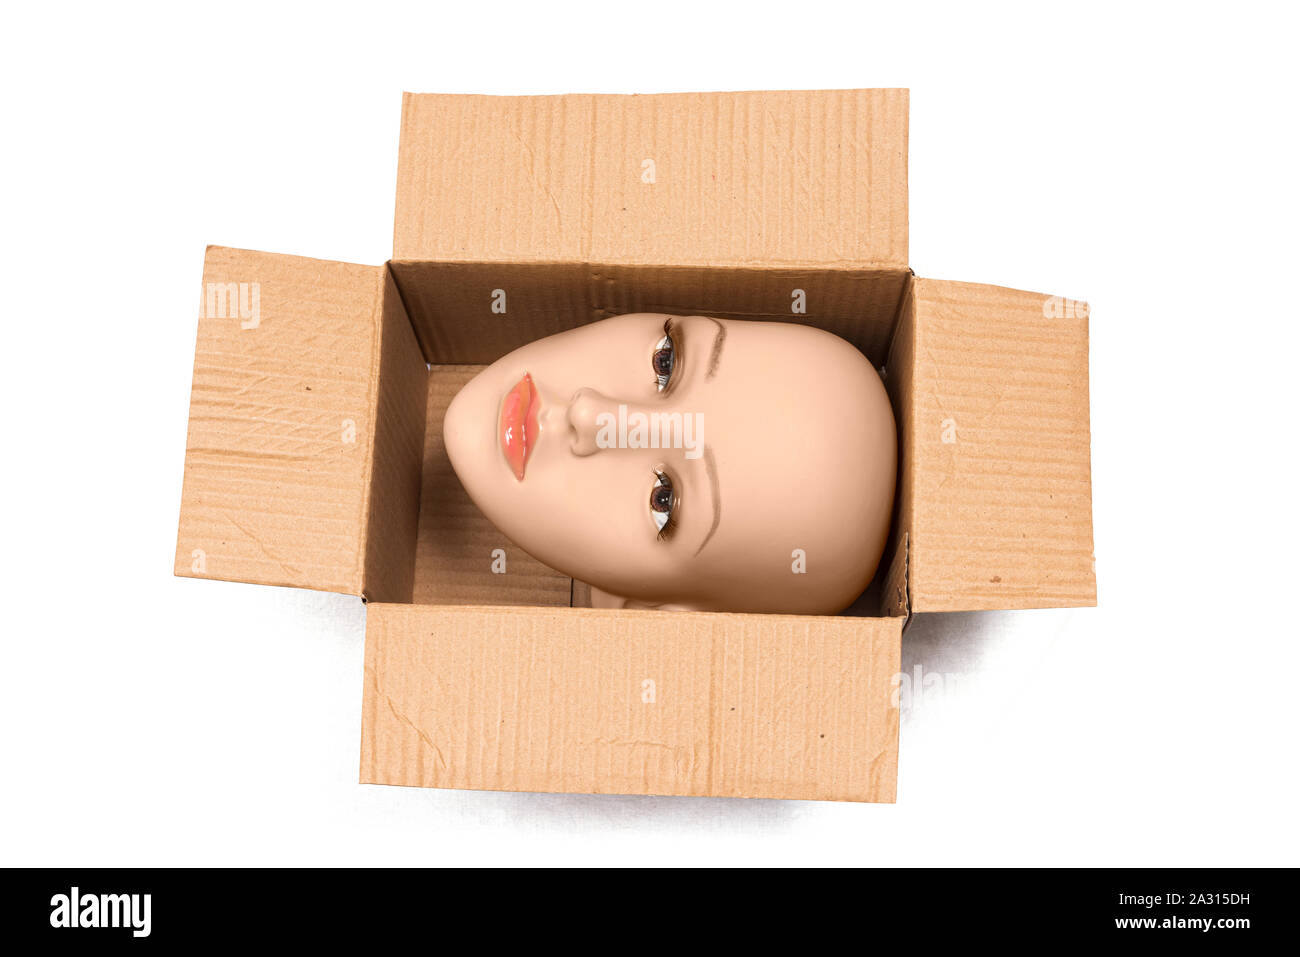 Inquadratura orizzontale di una donna calva manichino testa dentro un aprire la scatola di cartone con le ombre. La casella viene ruotato in modo che la testa è lateralmente. Sfondo bianco Foto Stock